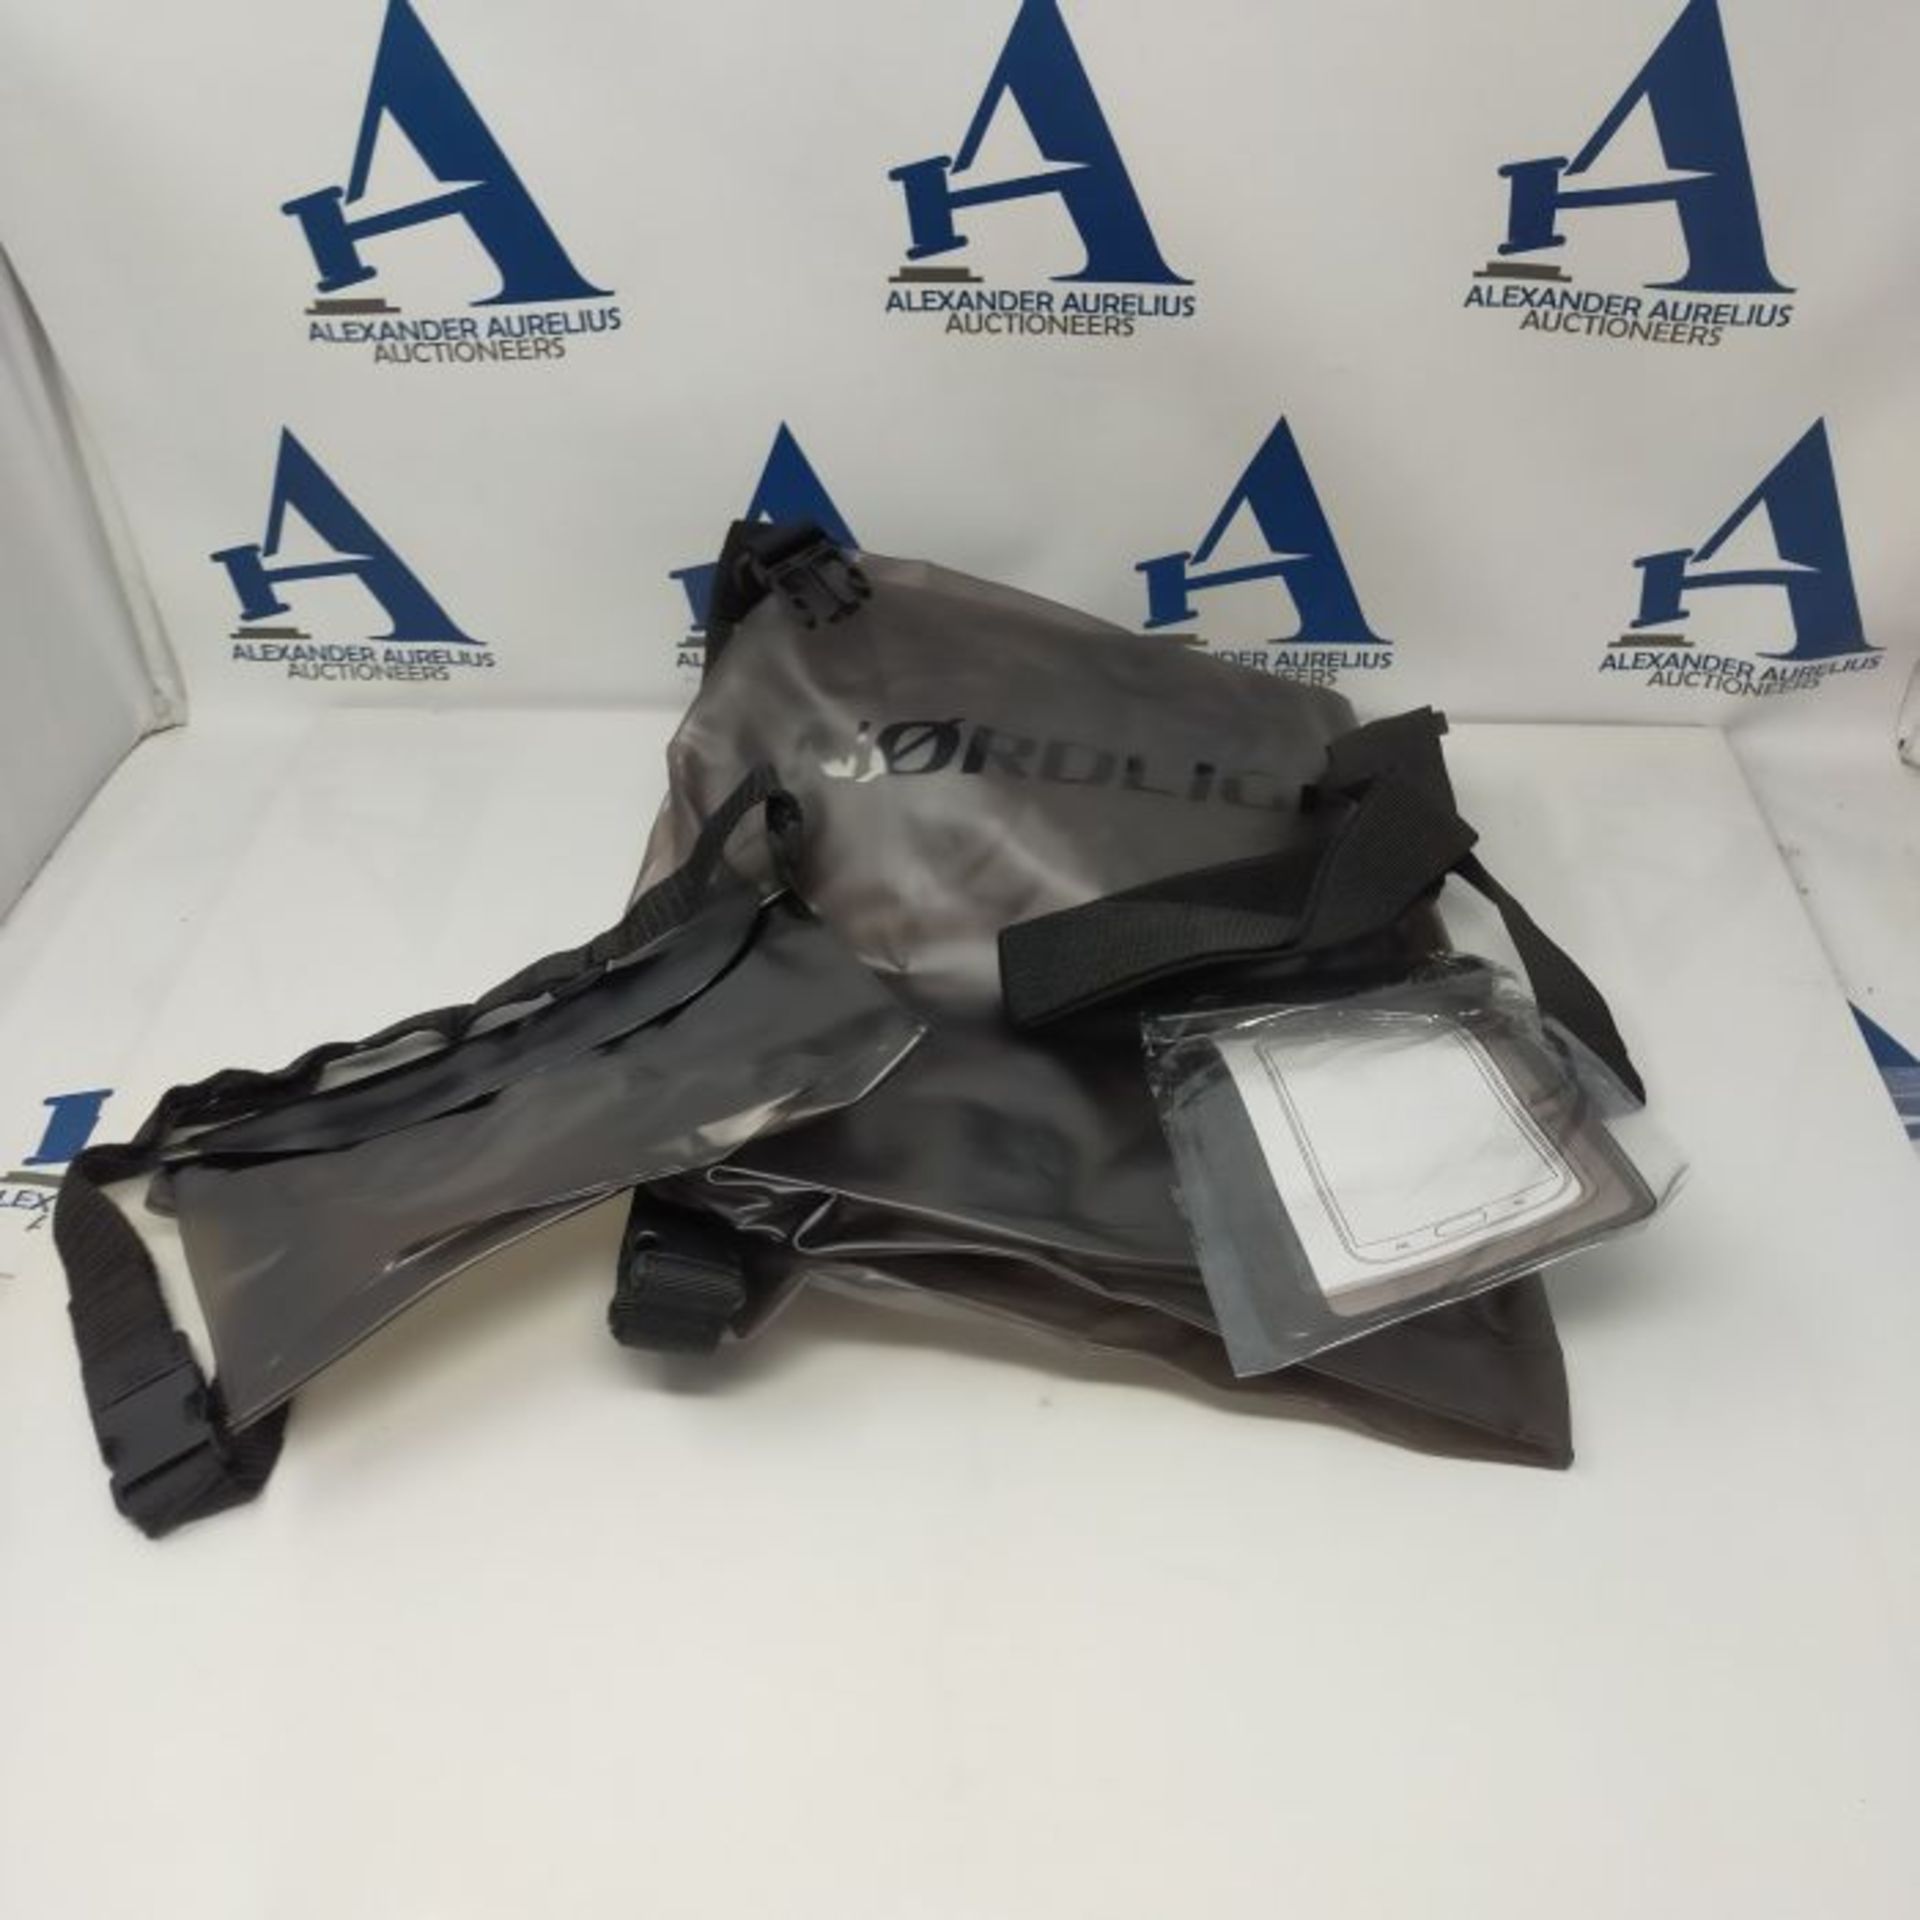 Waterproof Bag Set of 3 (Anthracite) - Dry Bag 20l + Waterproof Mobile Phone Sleeve + - Image 2 of 3